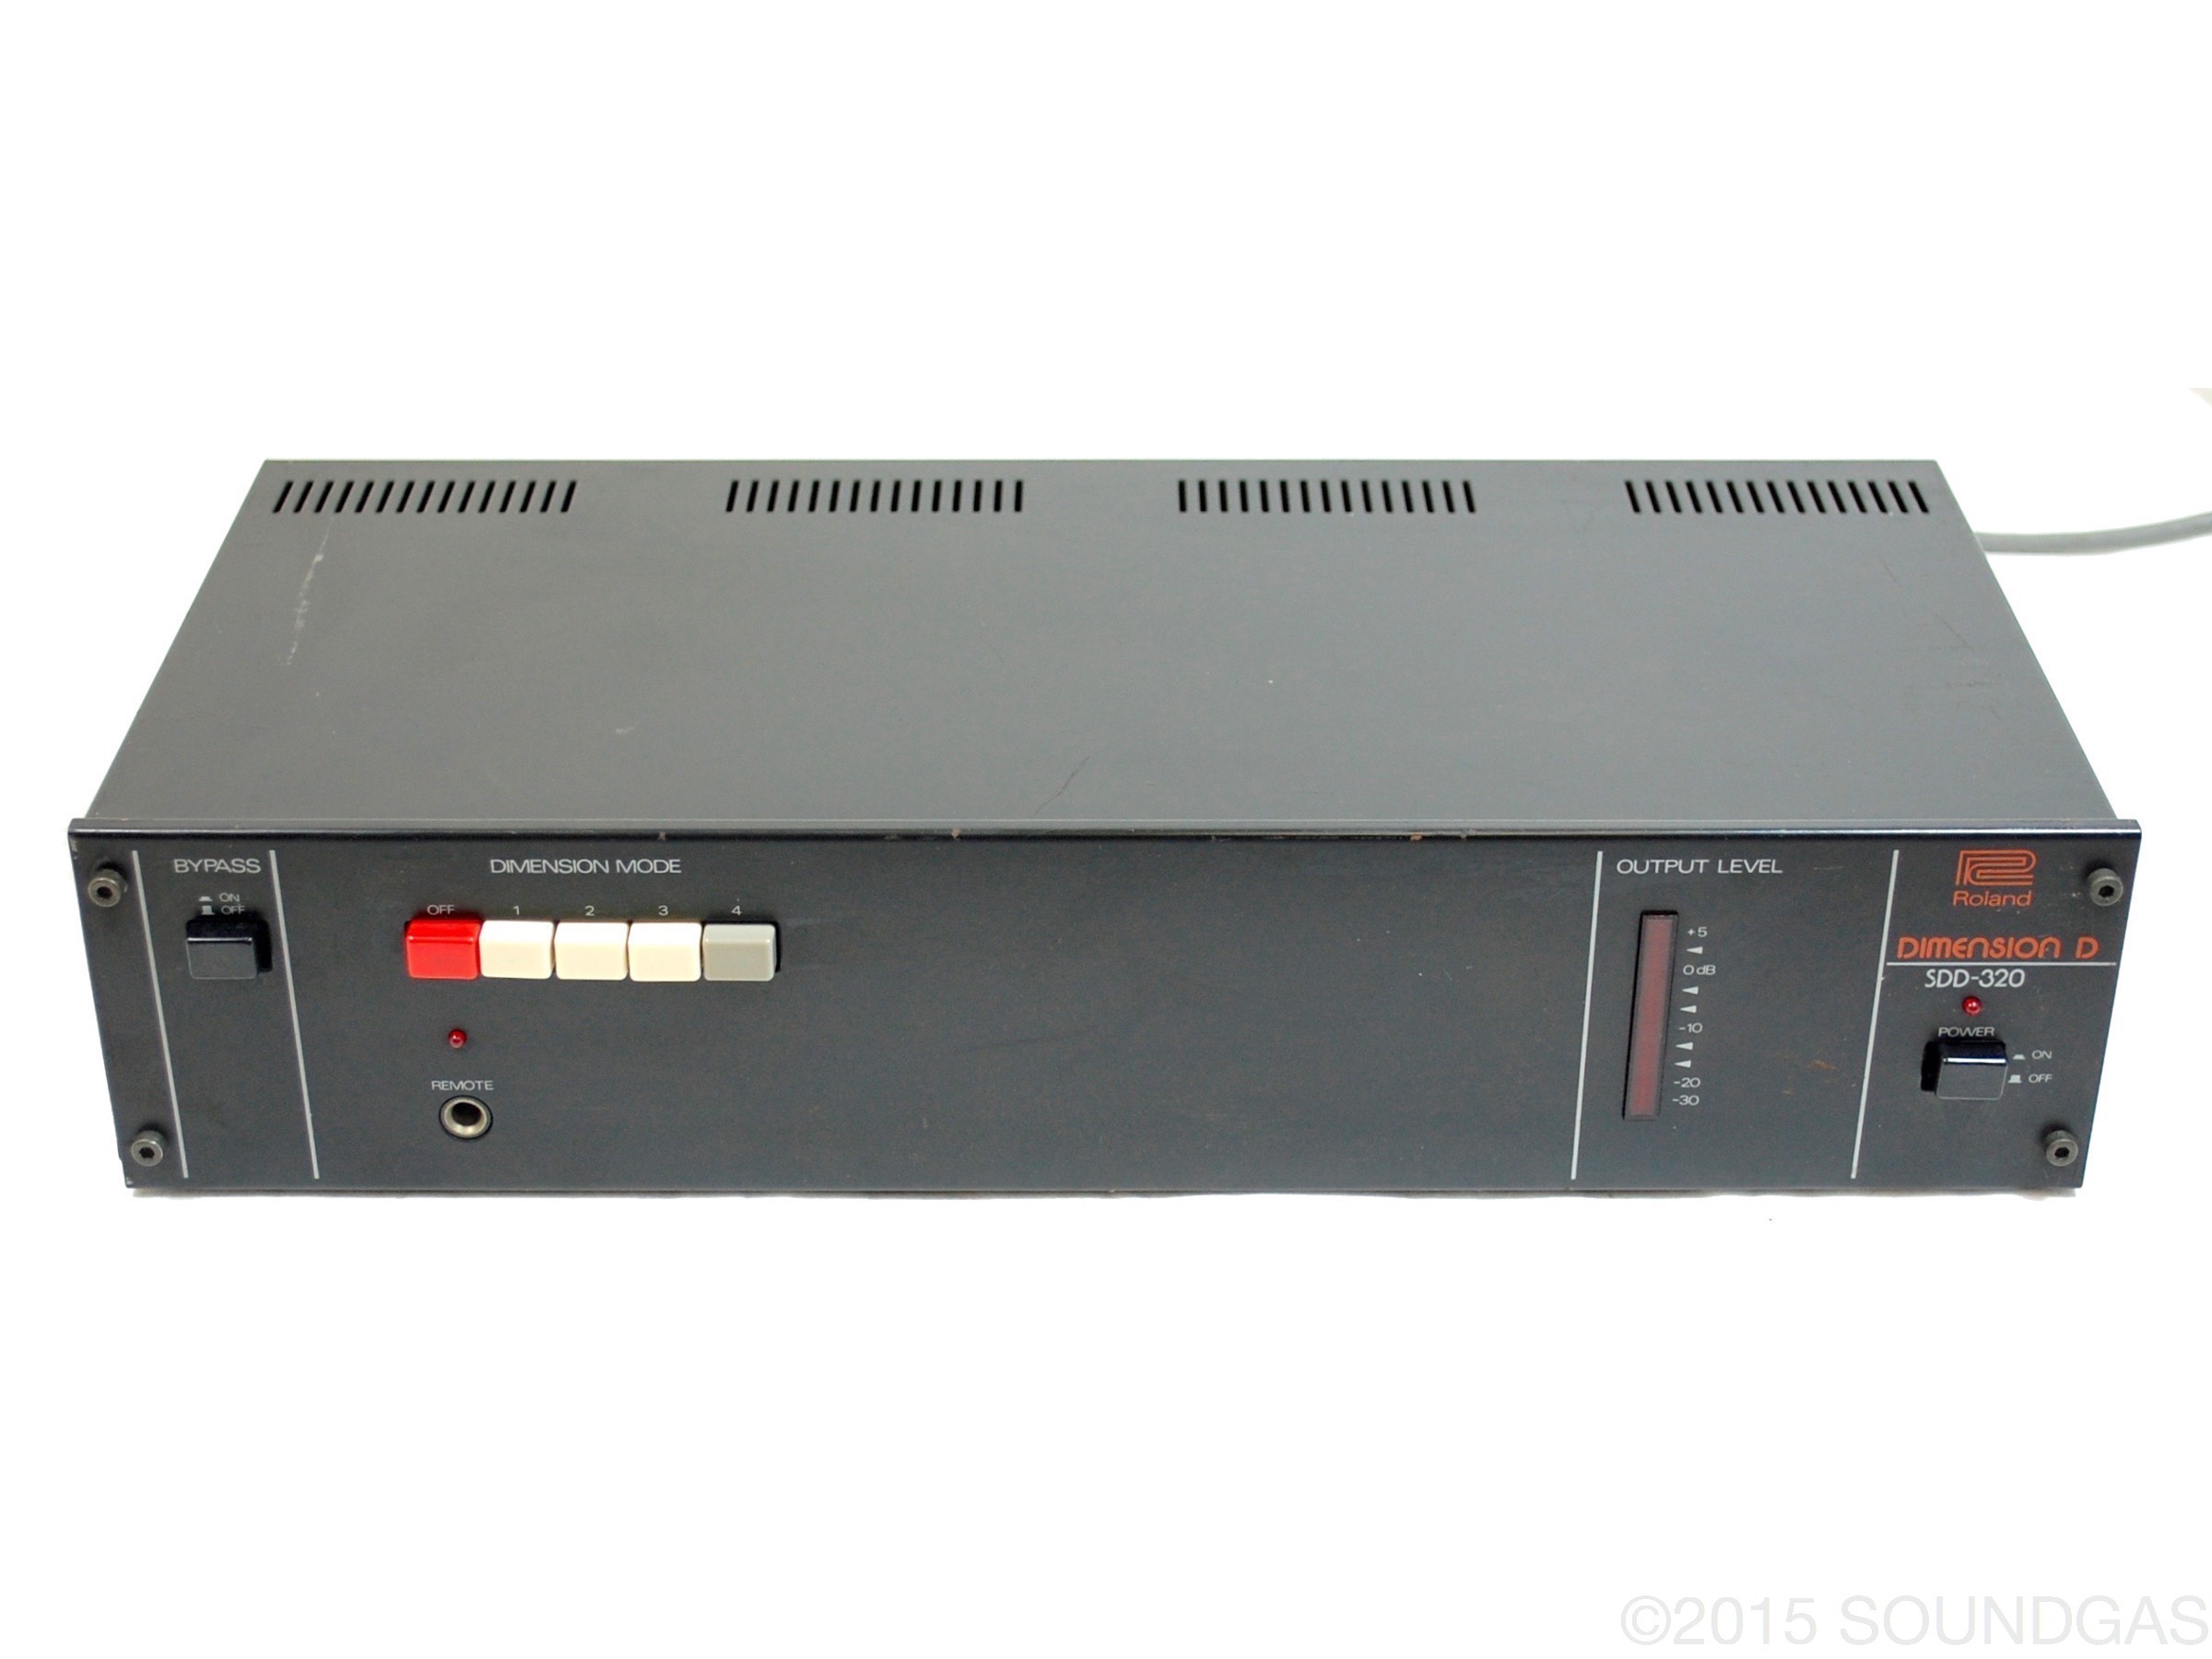 Roland Dimension D SDD 320 1980's 0 Effect For Sale Soundgas Ltd